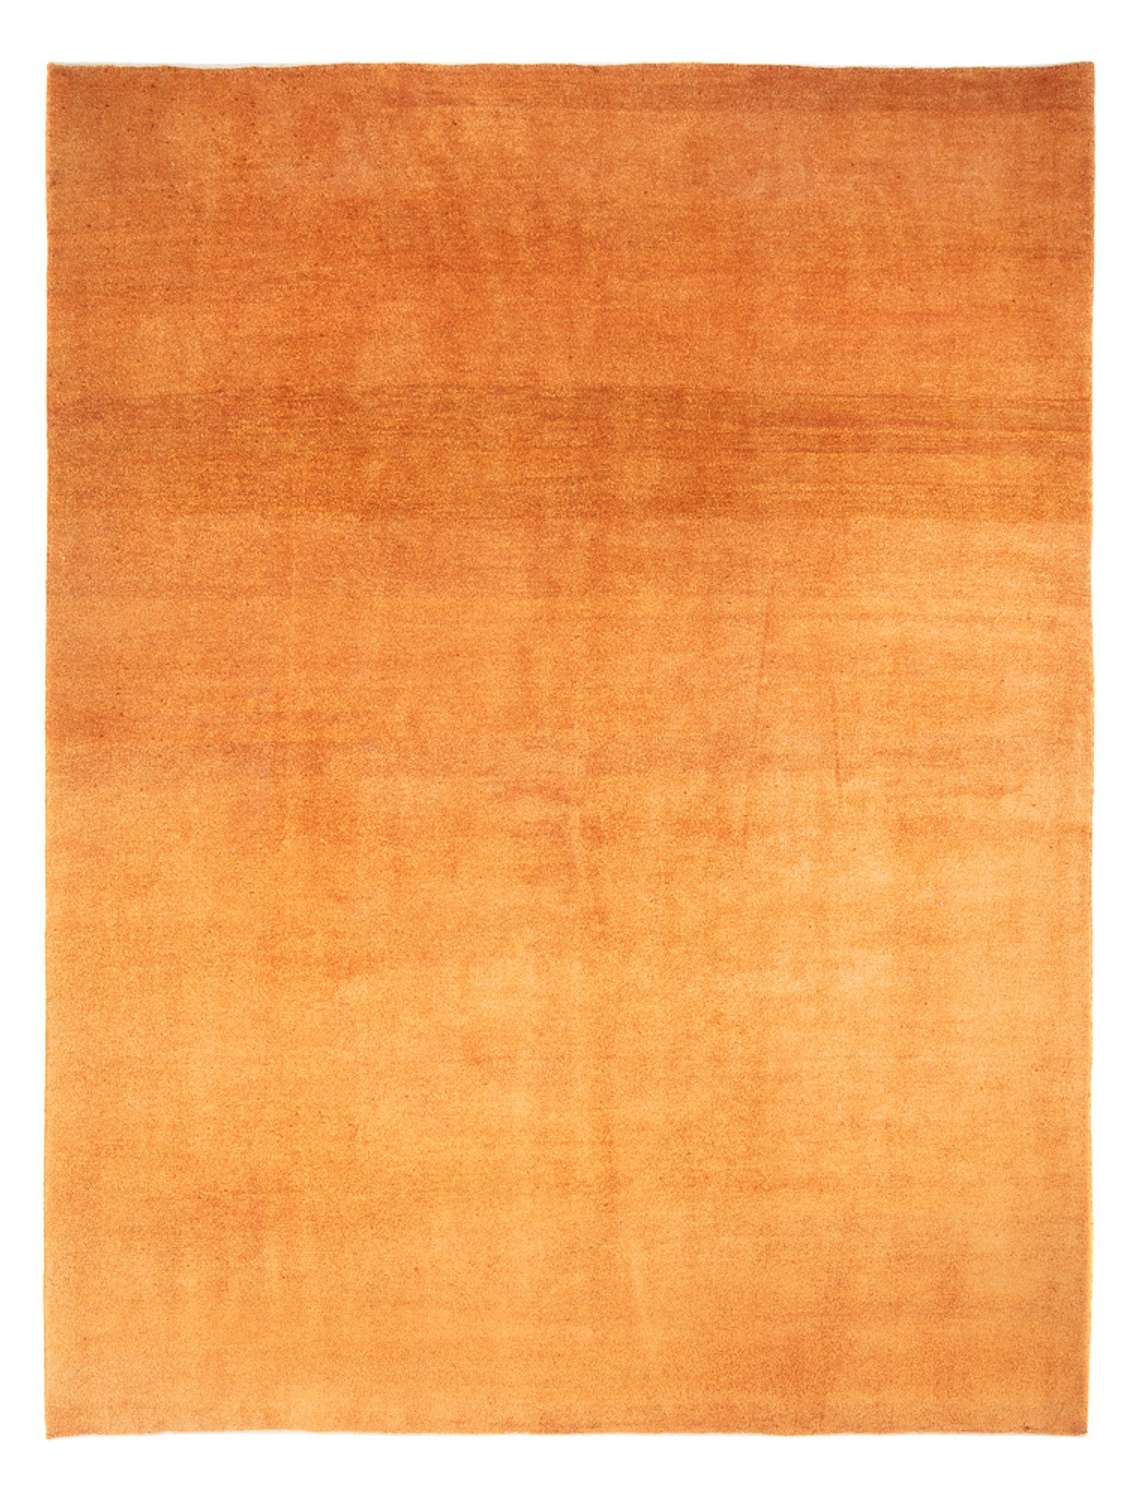 Gabbeh tapijt - Perzisch - 286 x 225 cm - goud